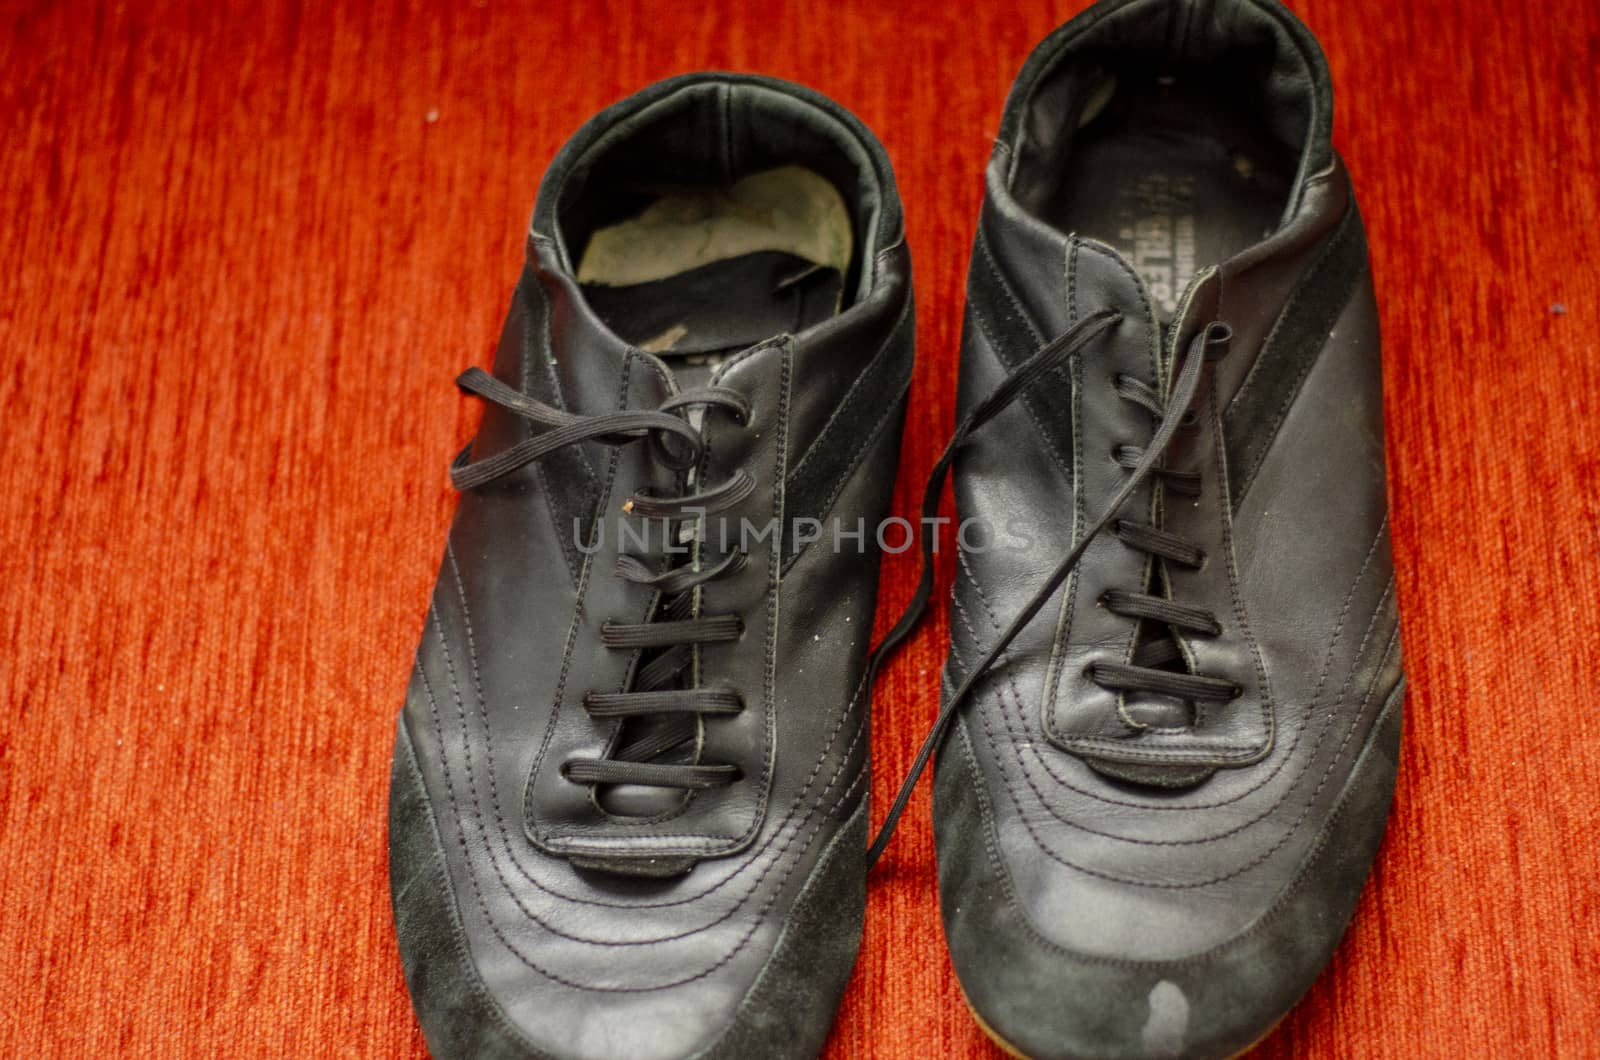 Old Black Walking Shoes, Vintage Black Walking Shoes